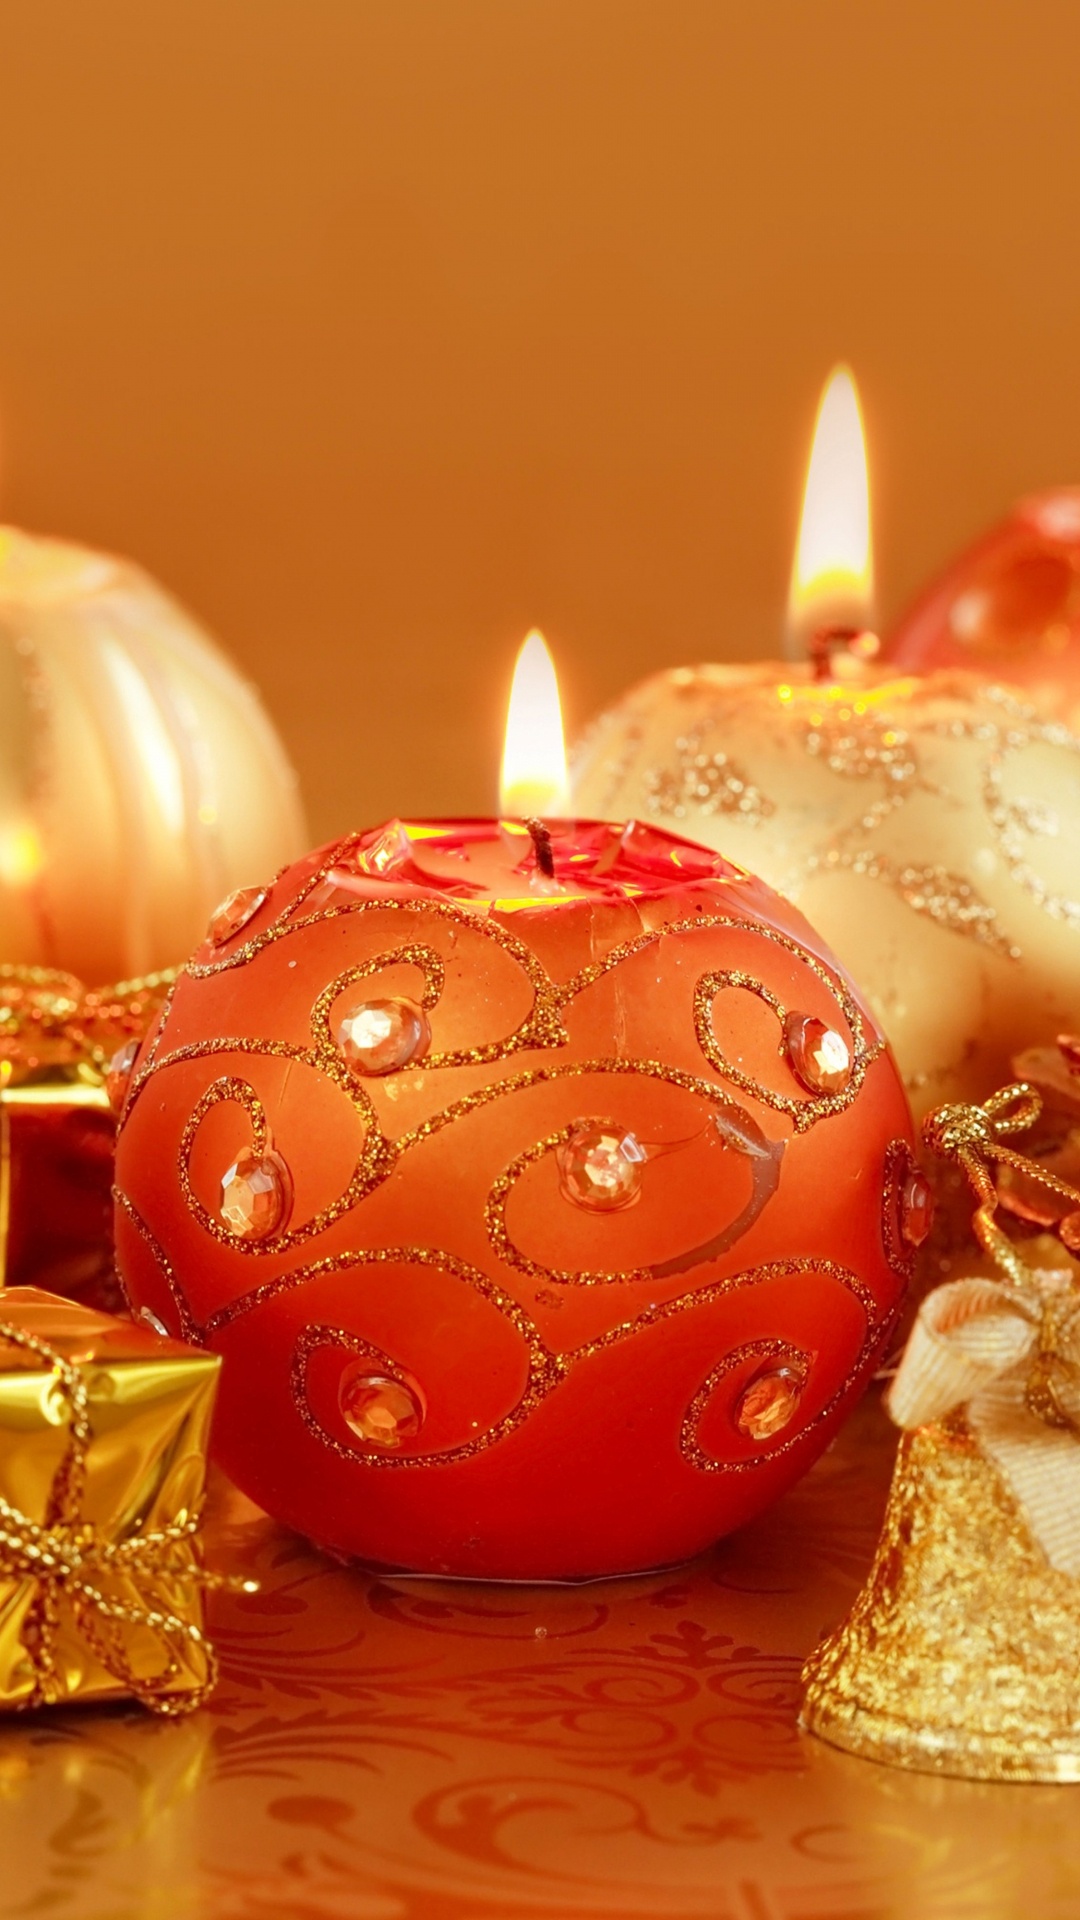 圣诞节那天, 新的一年, 仍然生活, 圣诞节的装饰品, 橙色 壁纸 1080x1920 允许